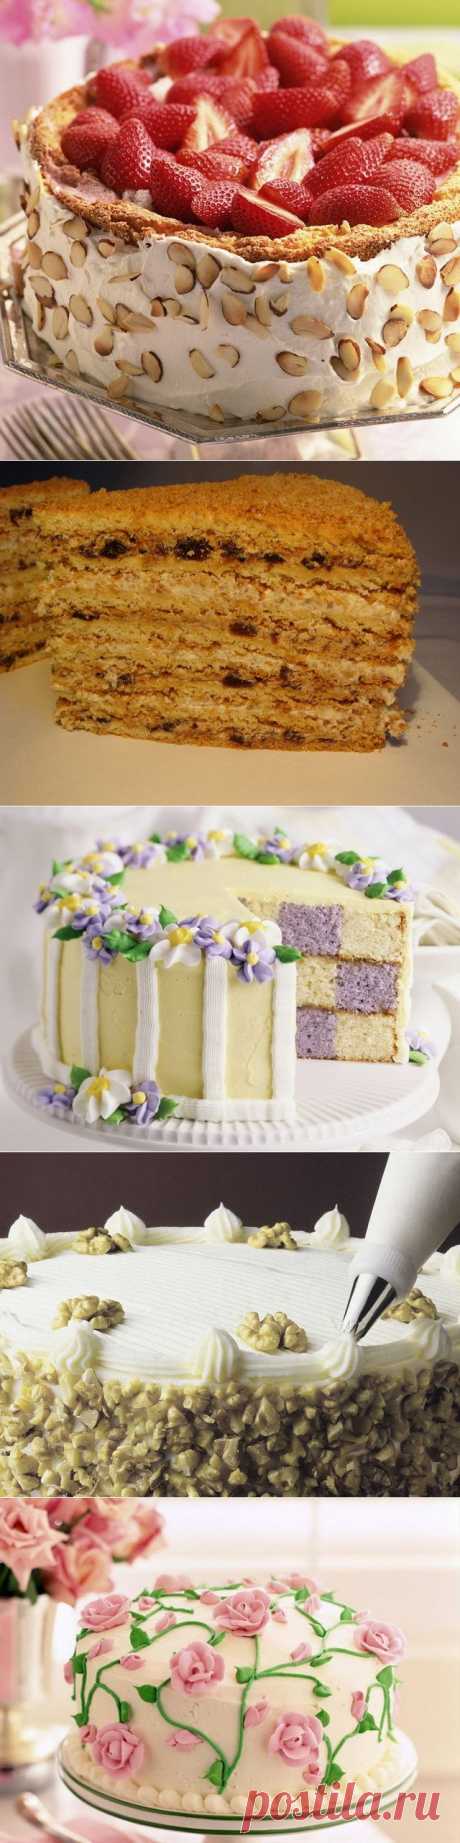 Домашние торты: разные на вкус и цвет